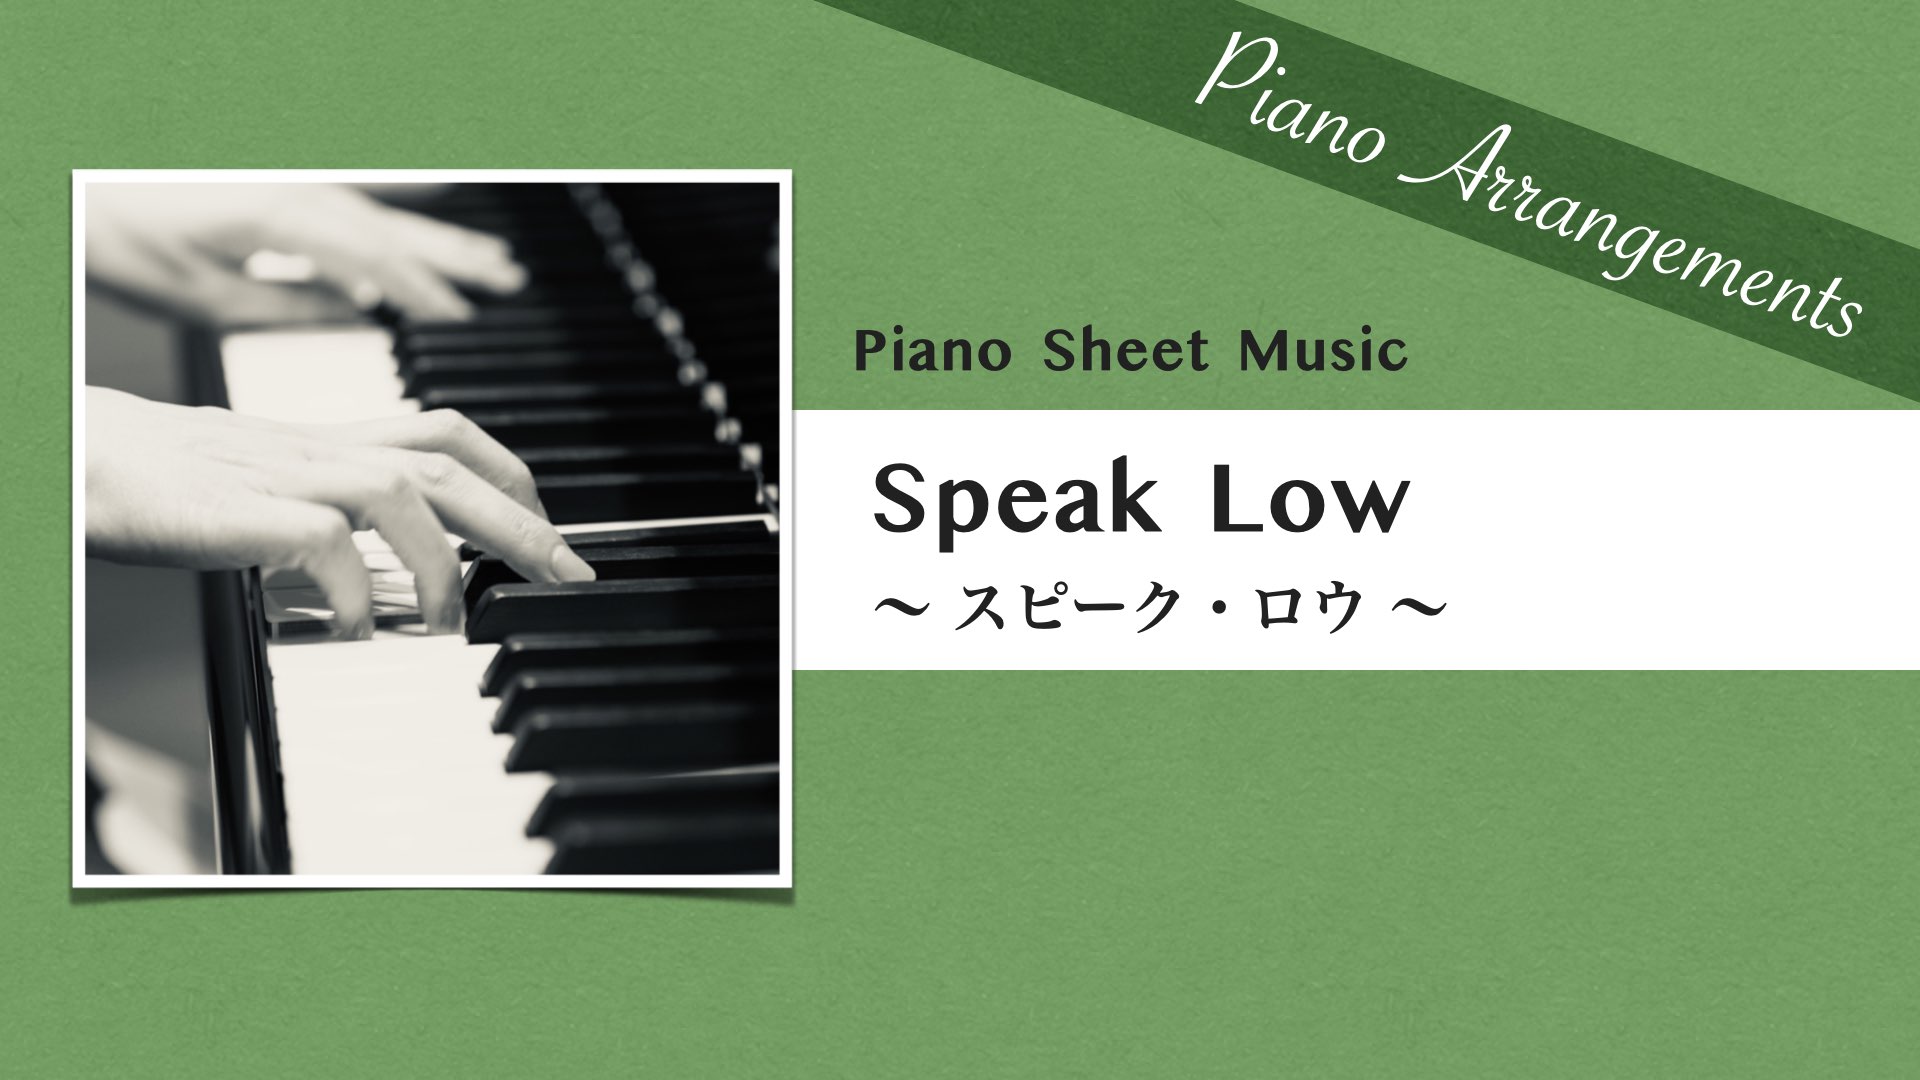 Speak Low /Jazz Song【Piano Sheet Music】